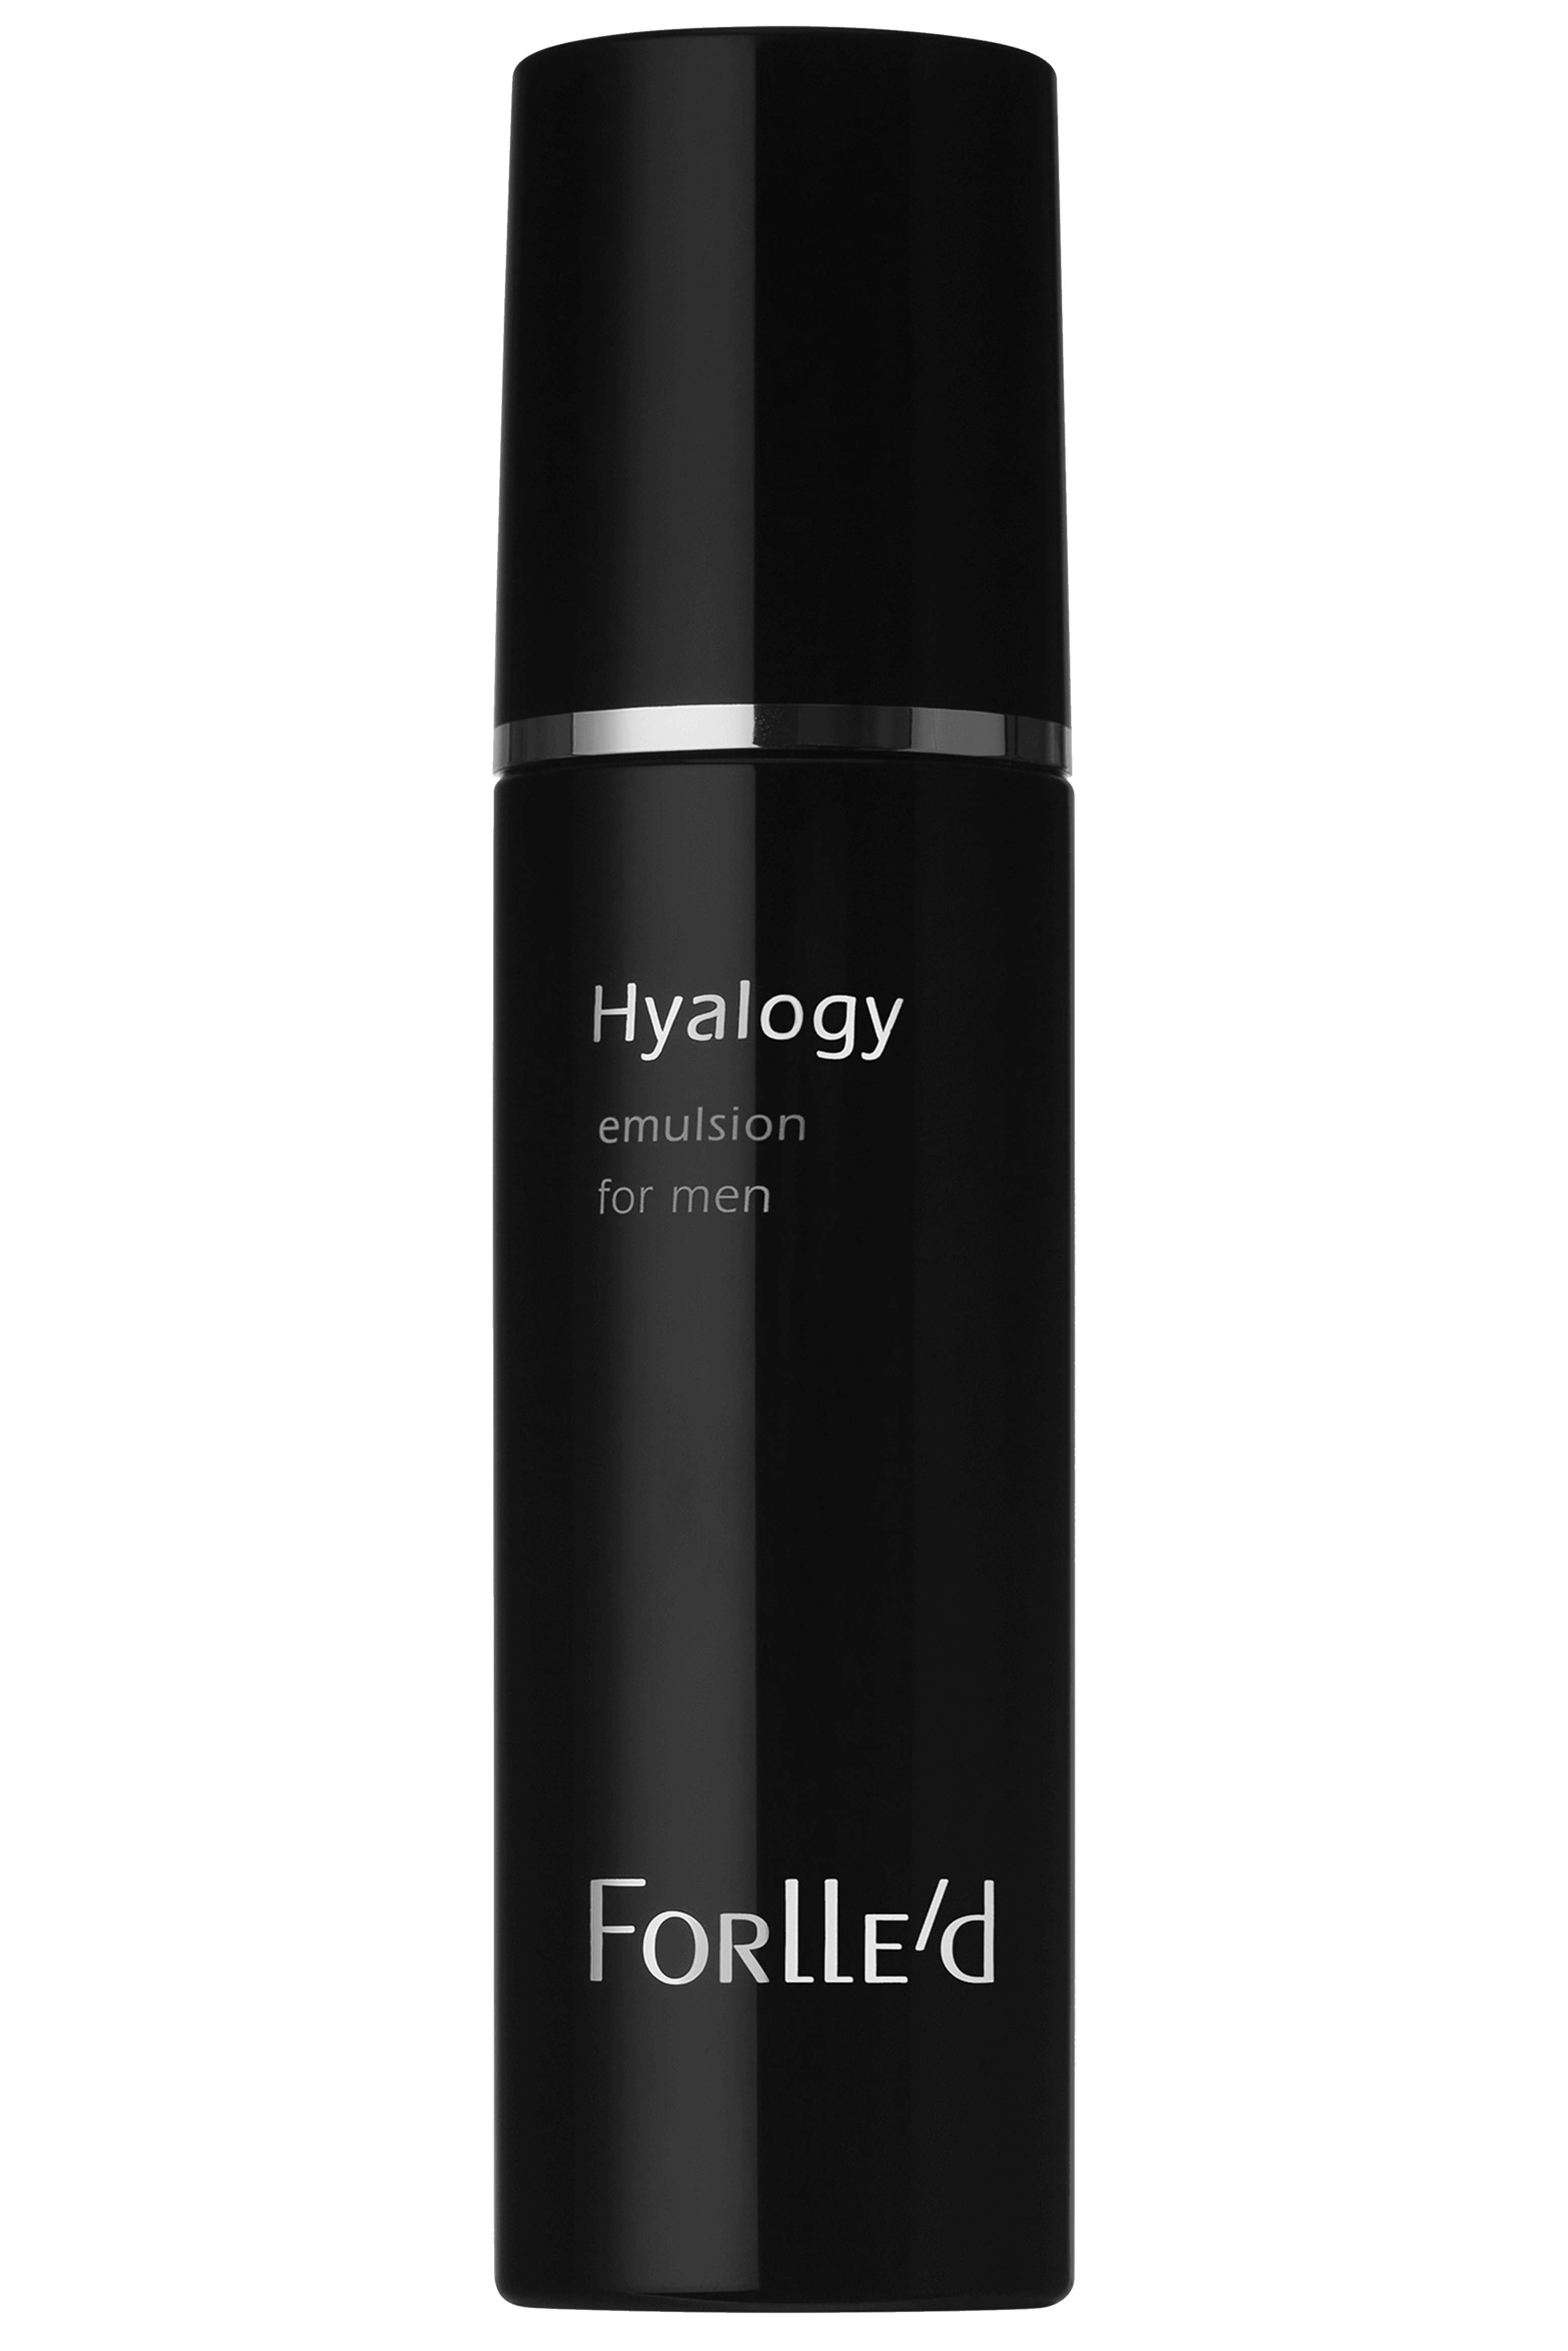 Forlled Hyalogy Emulsion for Men 100 ml